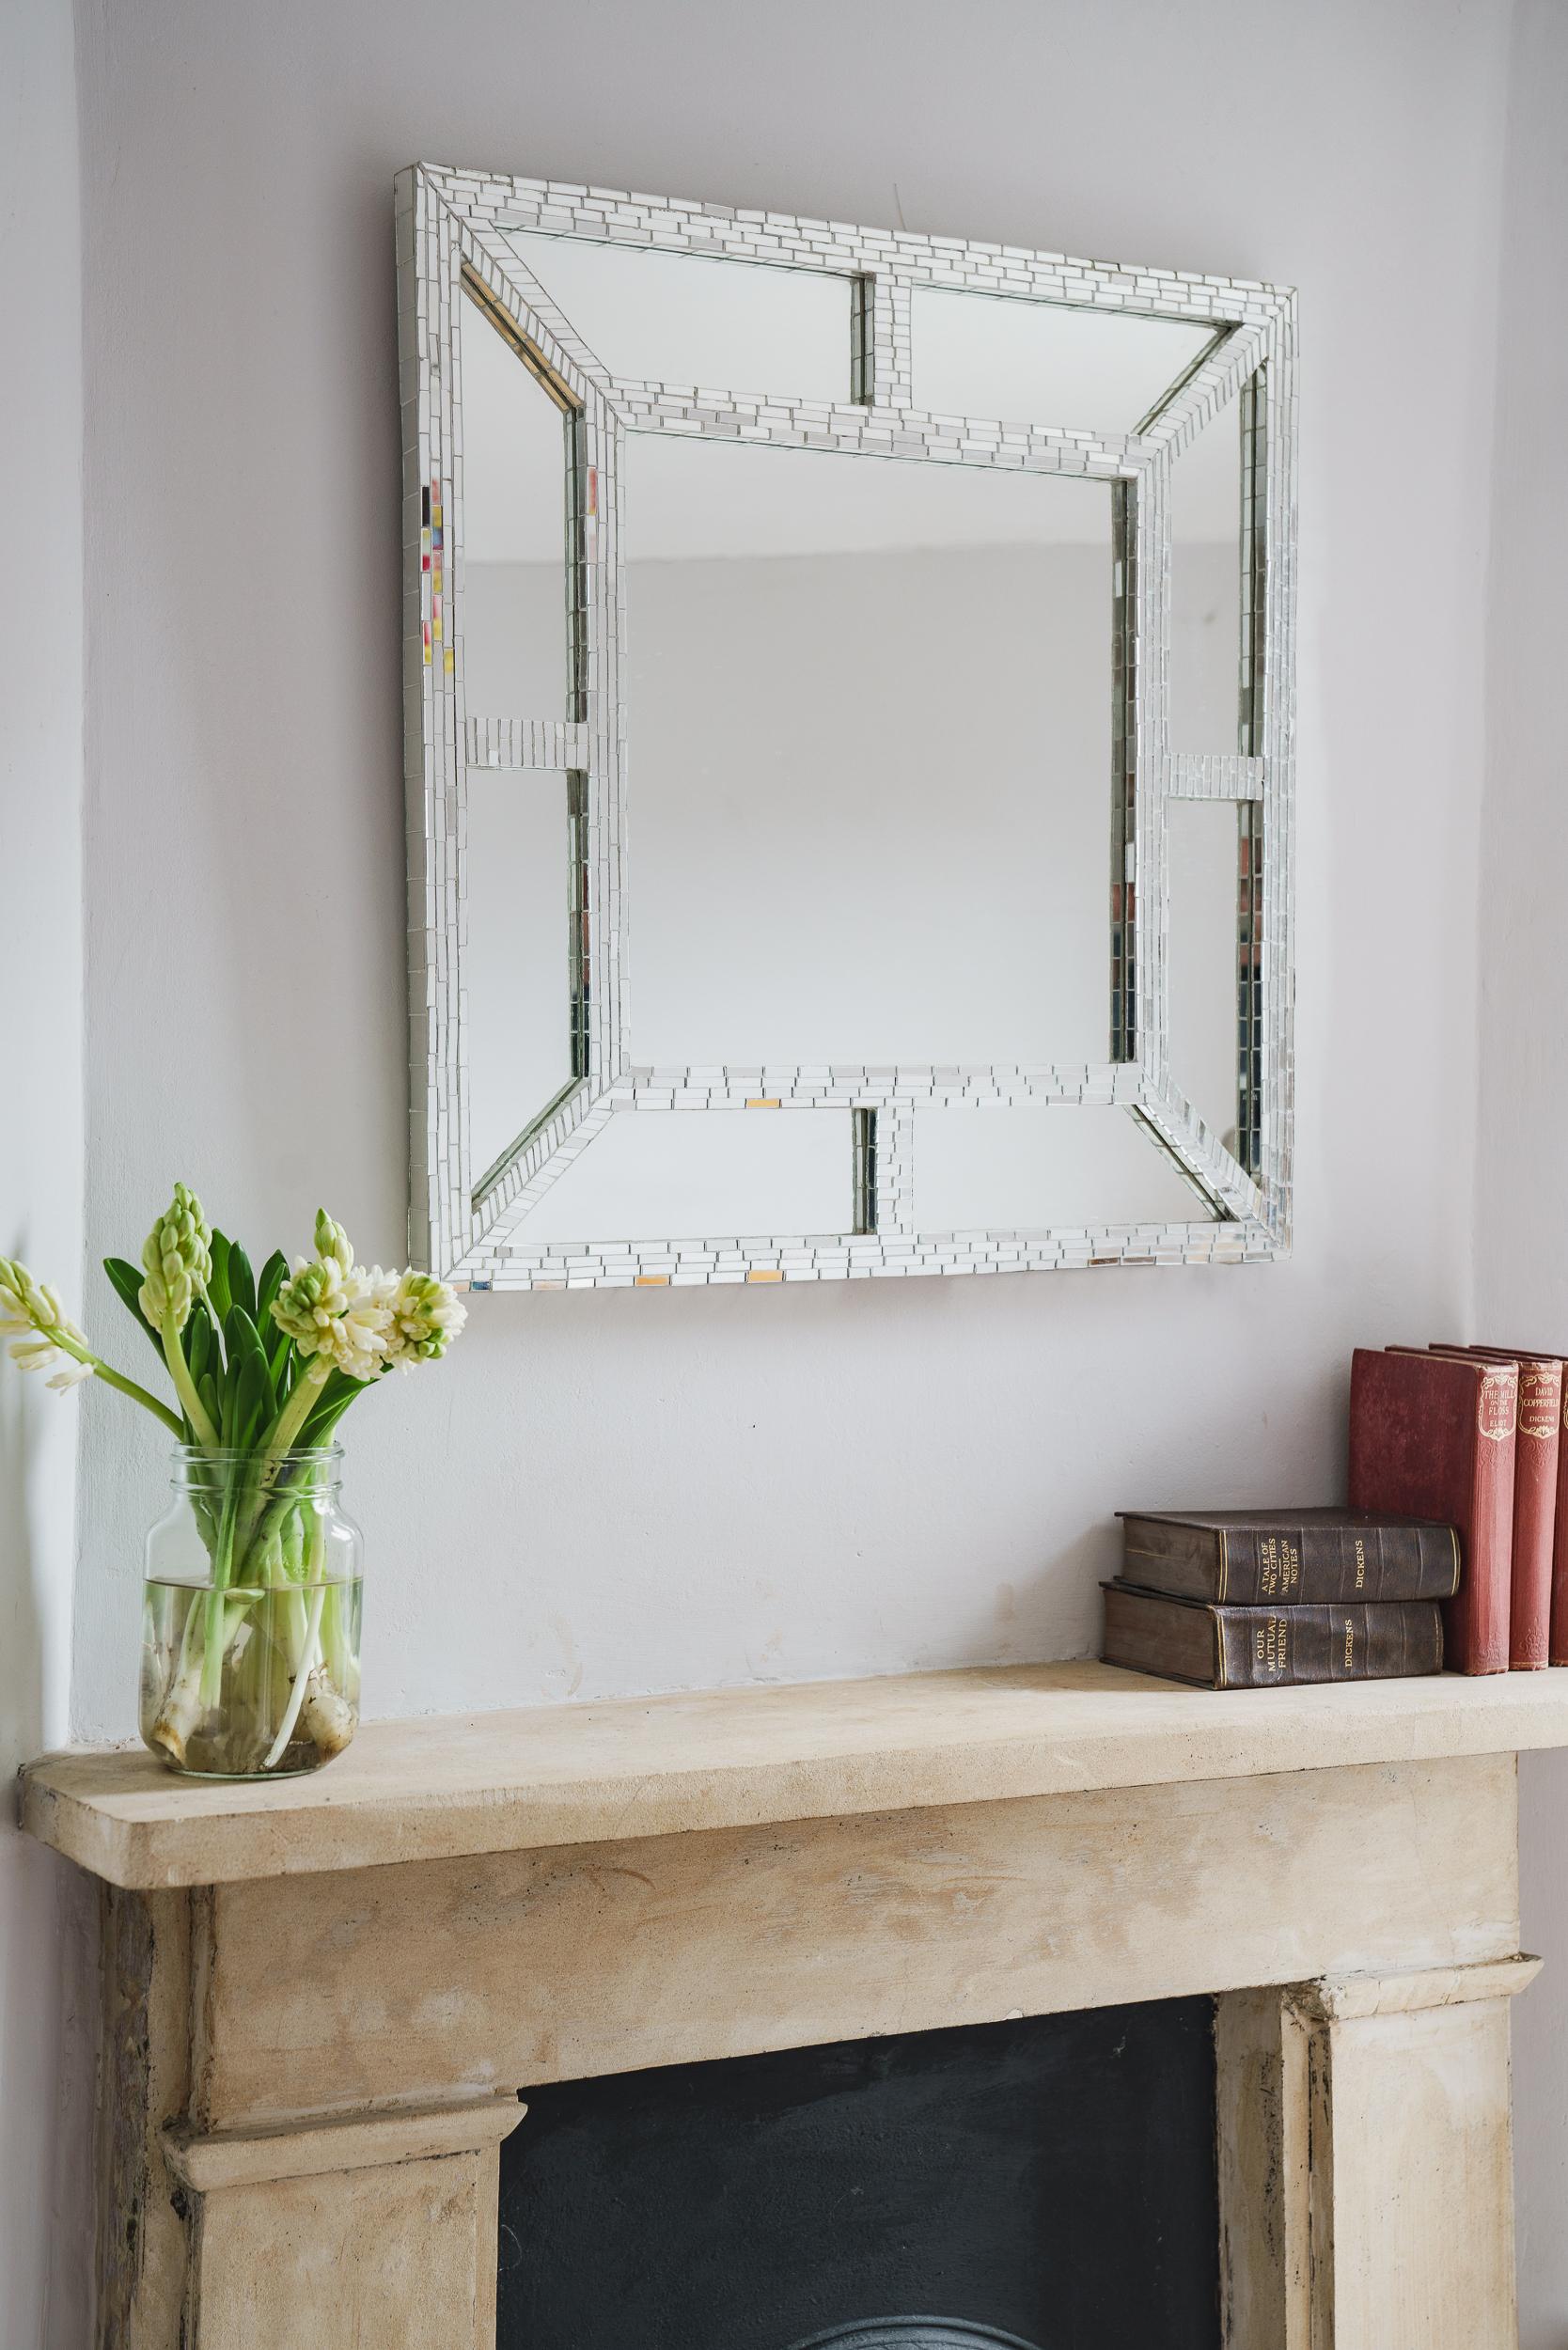 Miroir carré Ventana Mosaics fabriqué à la main au Royaume-Uni par Claire Nayman. Ce miroir de marge classique contemporain est en finition verre miroité. Chaque petite tesselle de mosaïque est taillée à la main avec un souci du détail exemplaire.